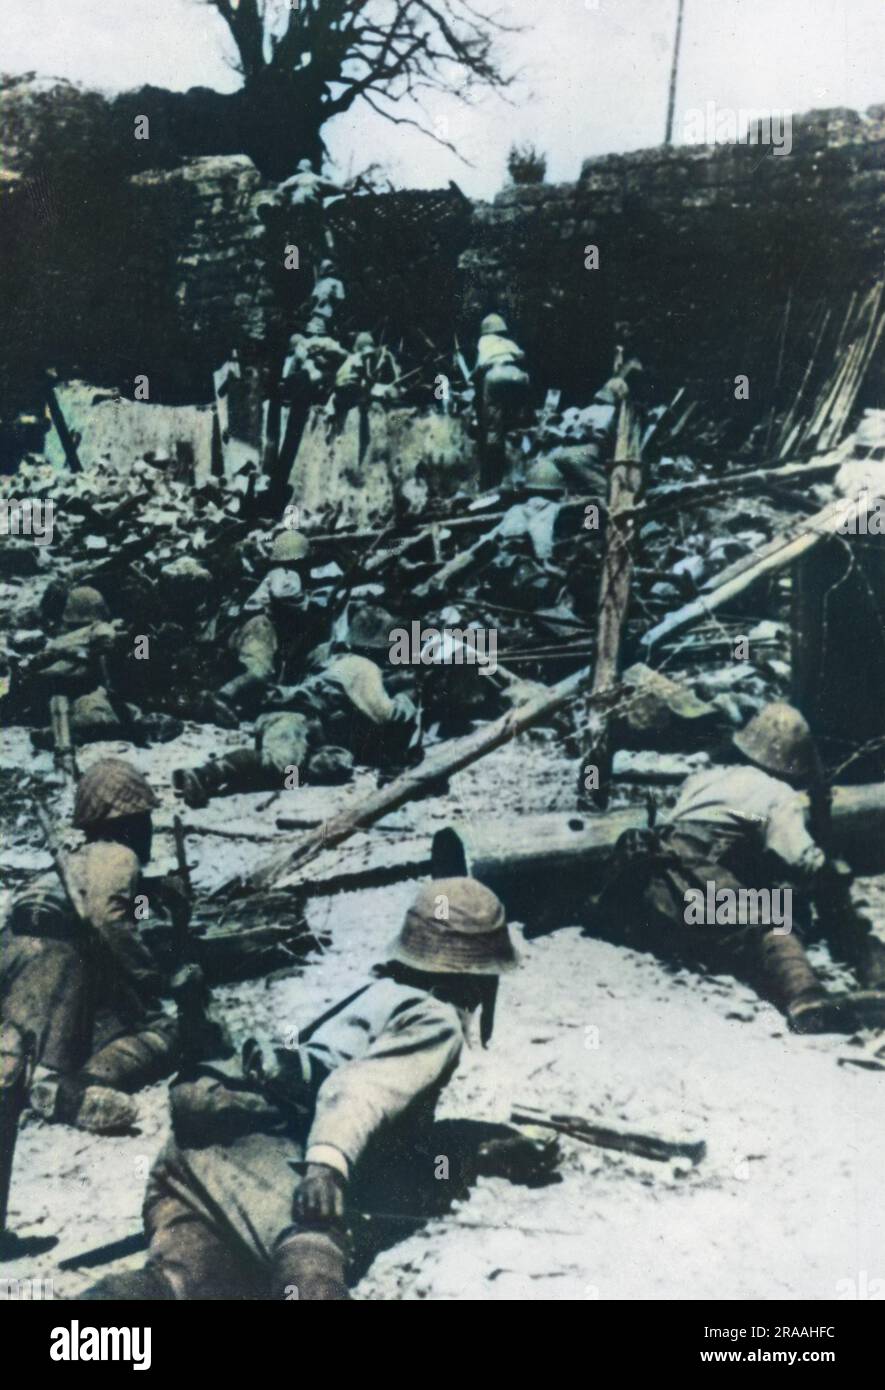 Während des Zweiten Chino-Japanischen Krieges starten japanische Truppen einen Angriff auf Chungking (Chongqing). Seit Ende 1938 wurde Chungking die Basis und provisorische Hauptstadt von Chiang Kai-Sheks KMT. Trotz zahlreicher Bombardierungen und Versuchen, die Stadt zu erobern, blieb sie bis zum Ende des Krieges standhaft. Datum: 1937-1945 Stockfoto